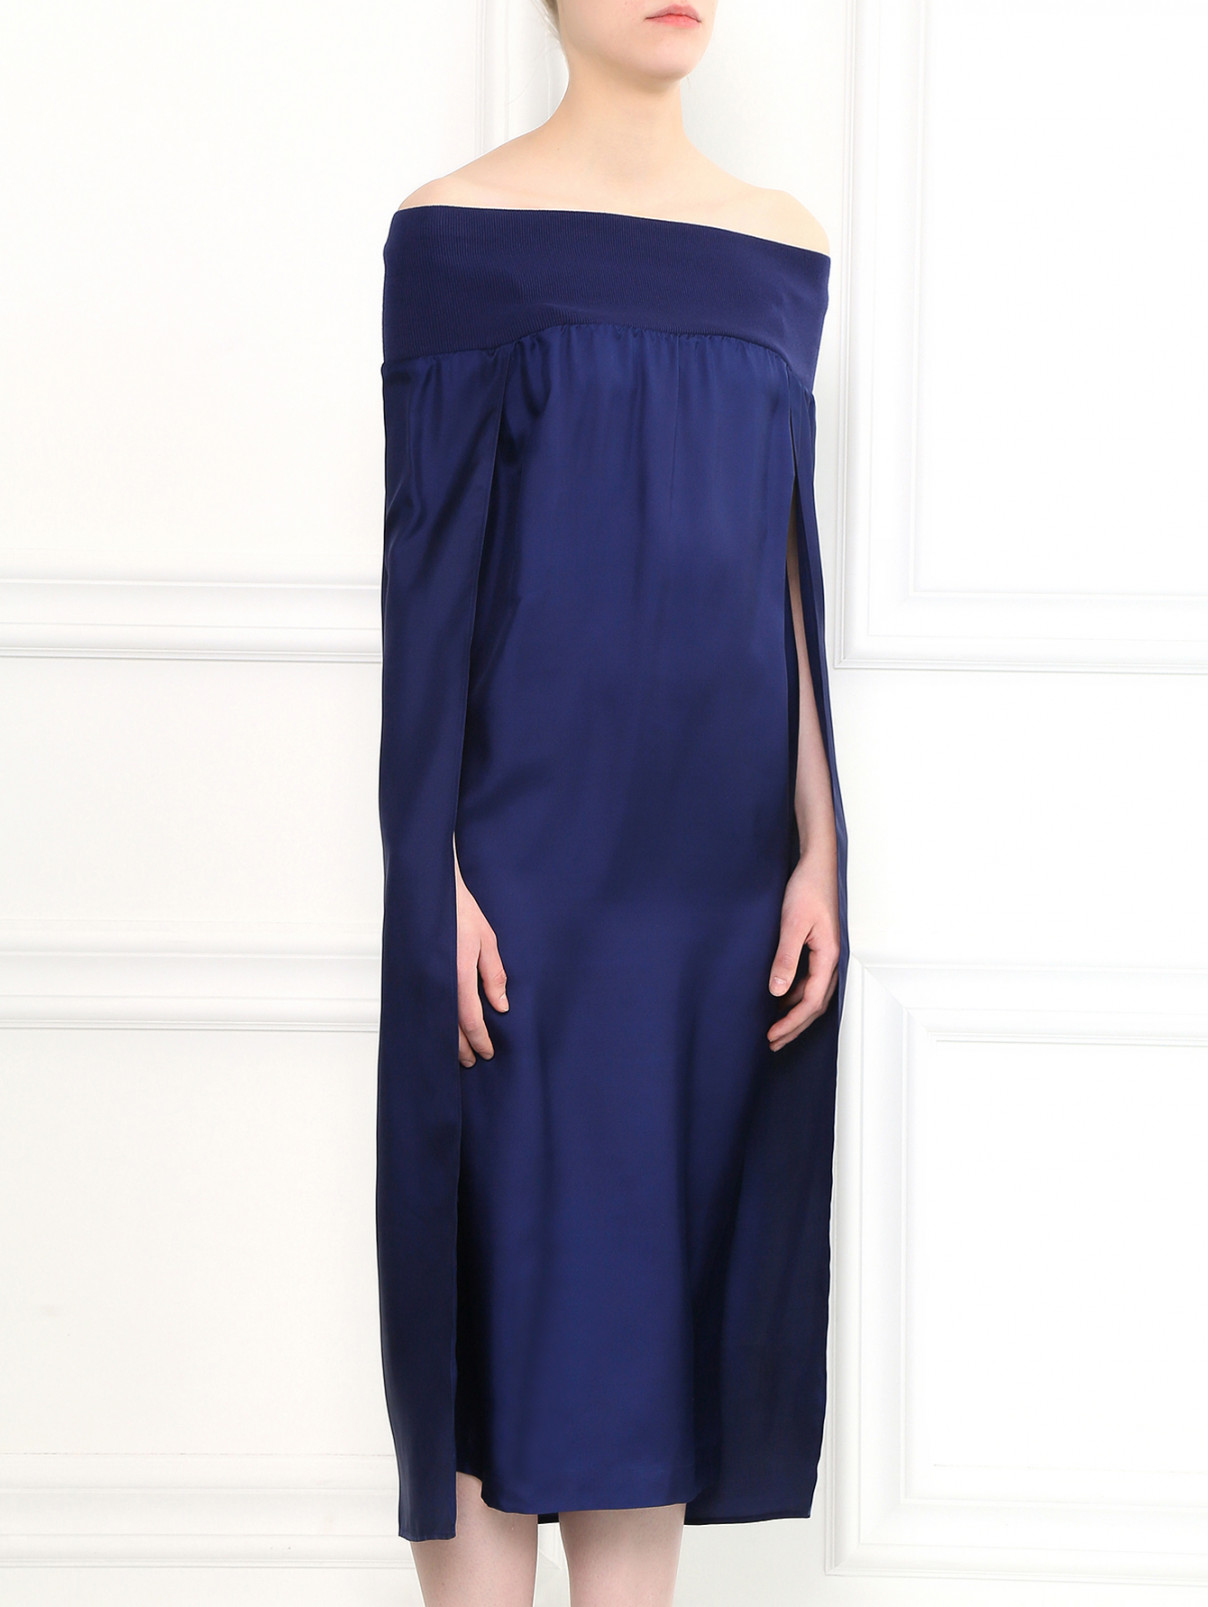 Платье свободного фасона из шелка на резинке Veronique Branquinho  –  Модель Верх-Низ  – Цвет:  Синий